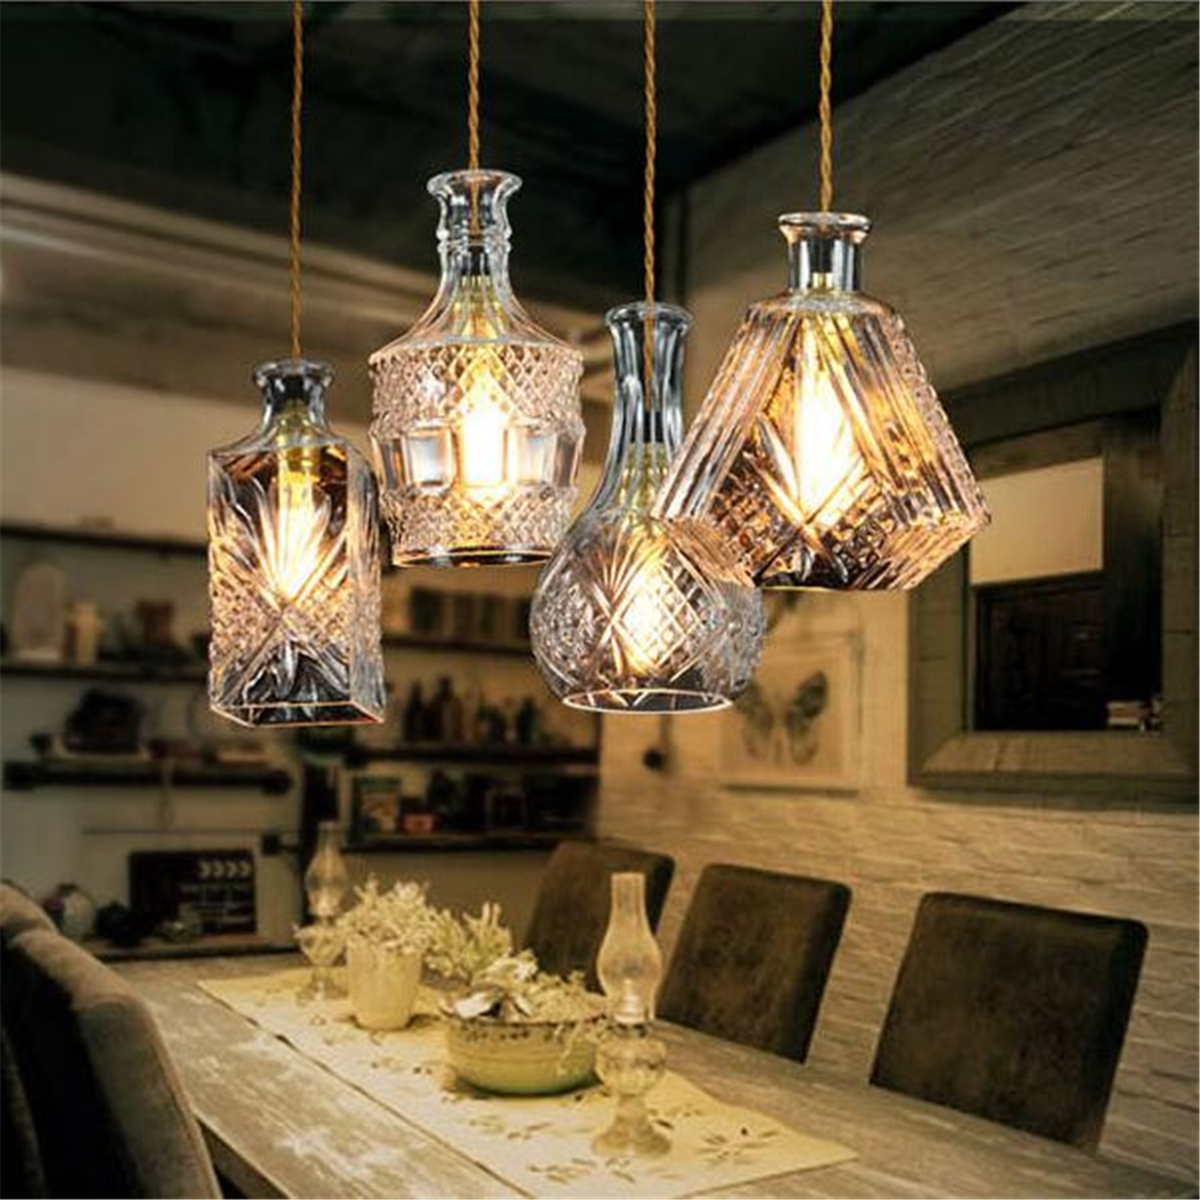 Vintage-Decanter-Bottle-Pendant-Ceiling-Light-Chandelier-Lamp-Fixture-Home-Decor-1634446-4